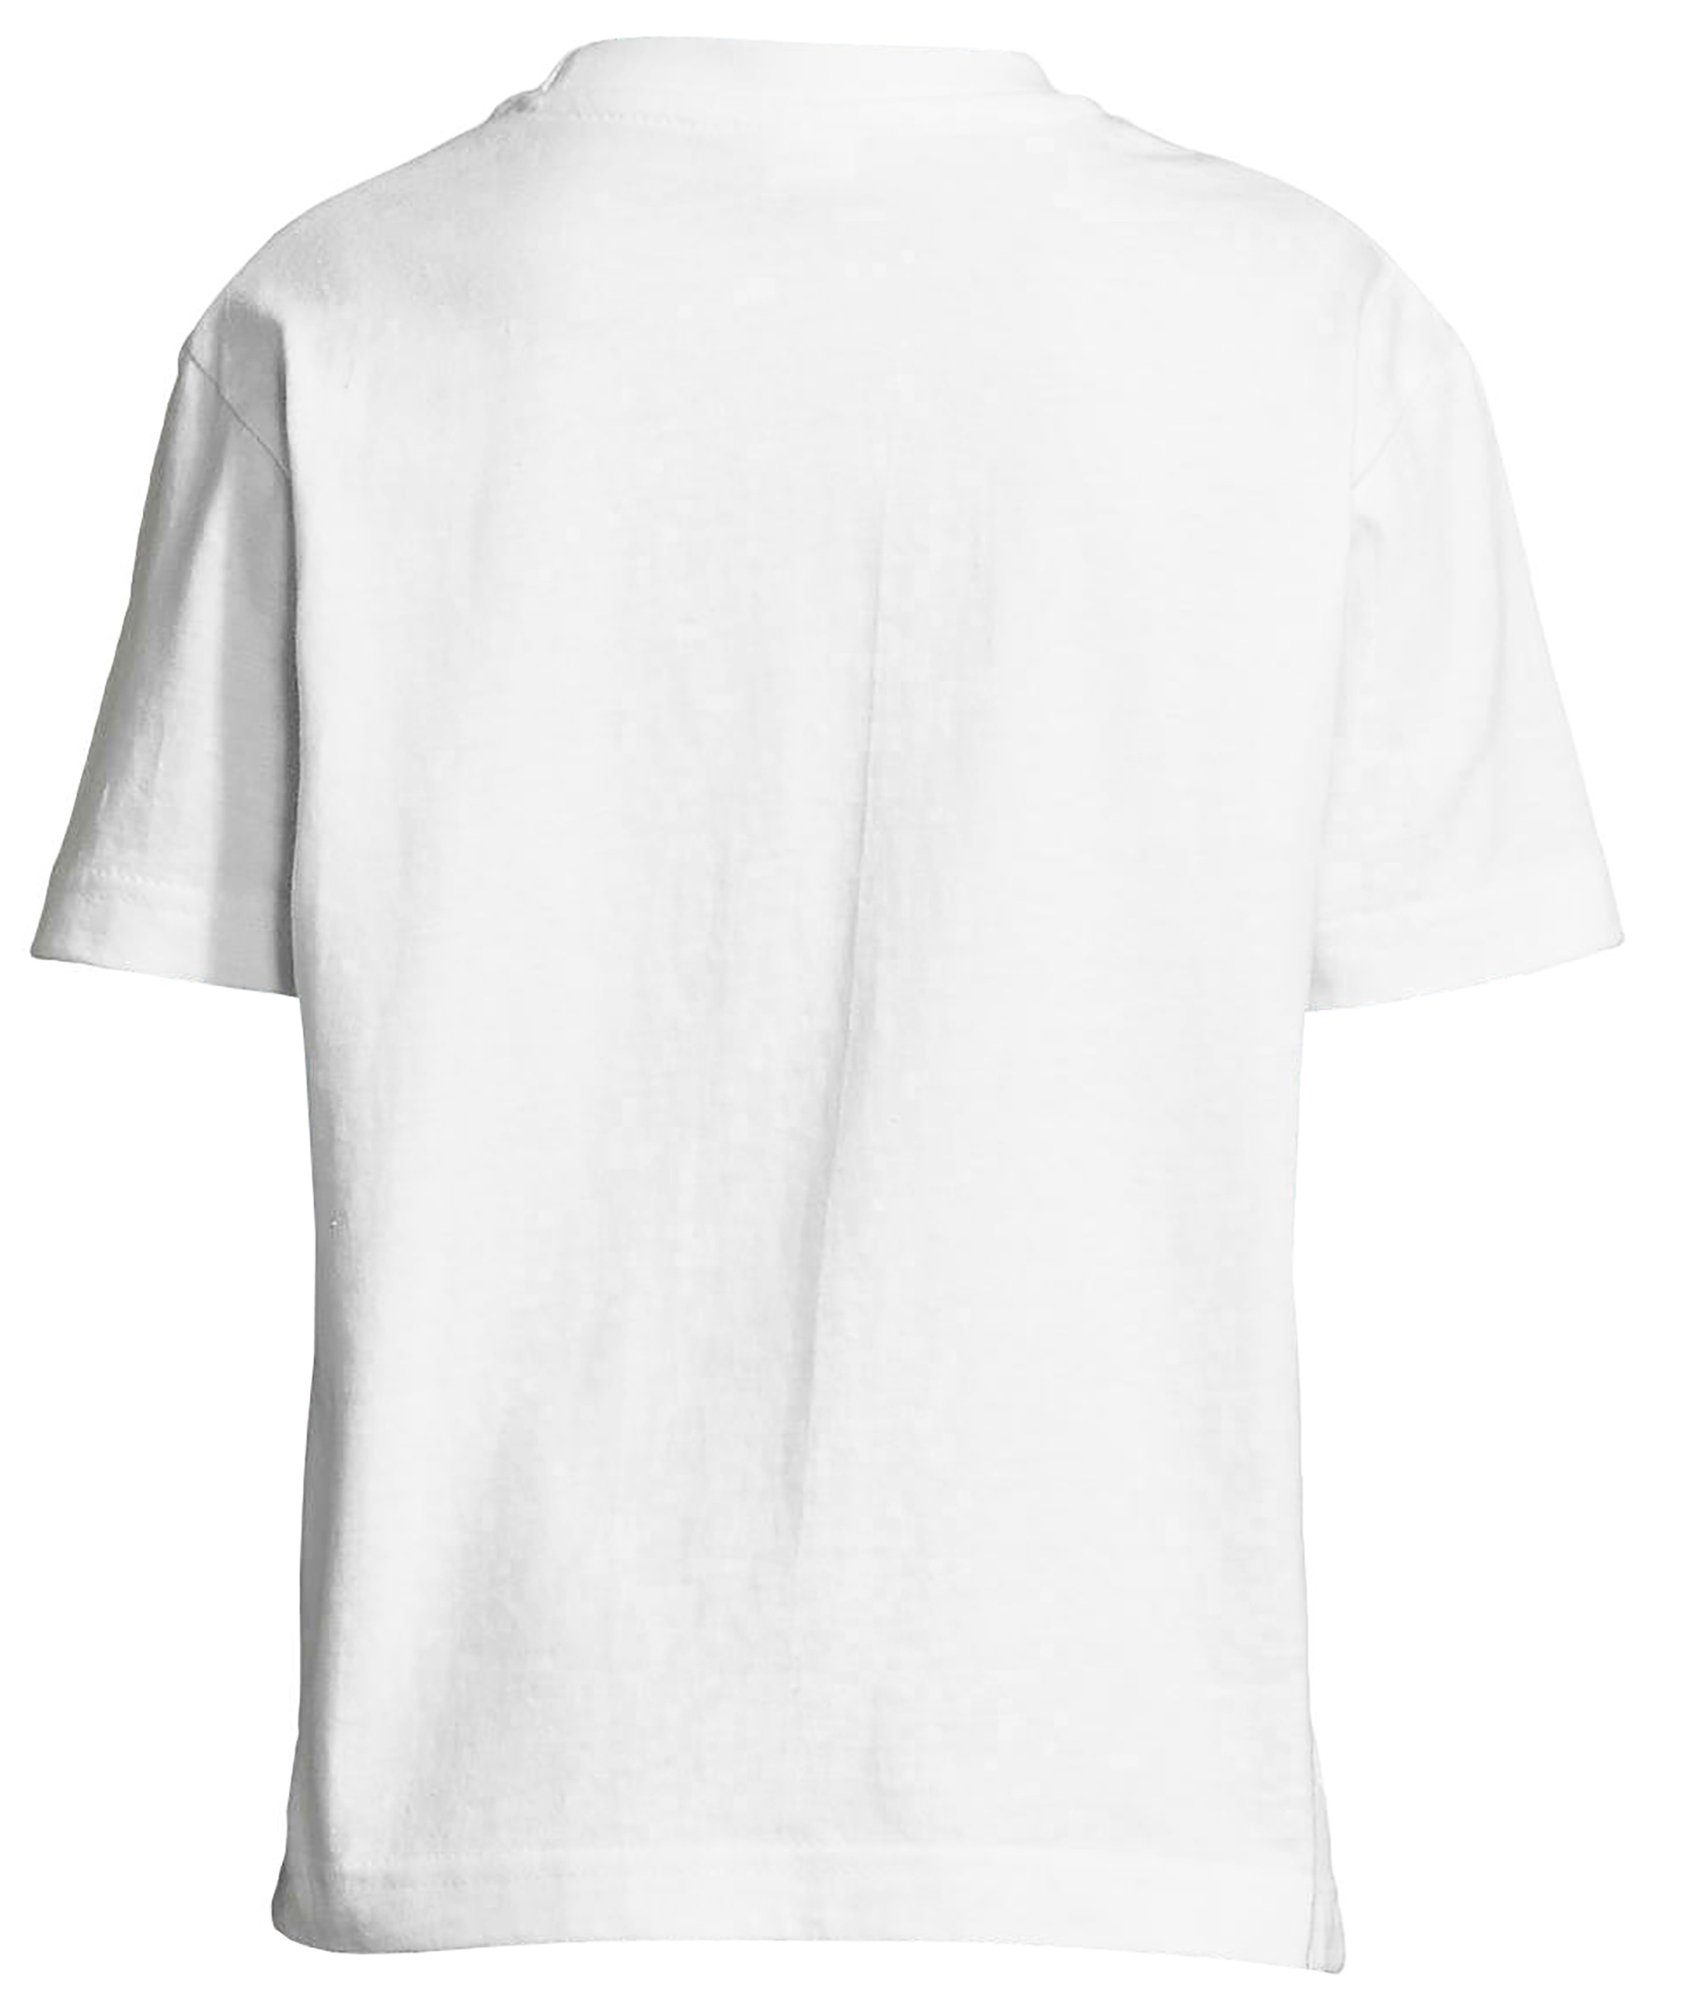 i148 Baumwollshirt Mädchen weiss mit zwei MyDesign24 Pferdeköpfe bedrucktes Aufdruck, T-Shirt Print-Shirt